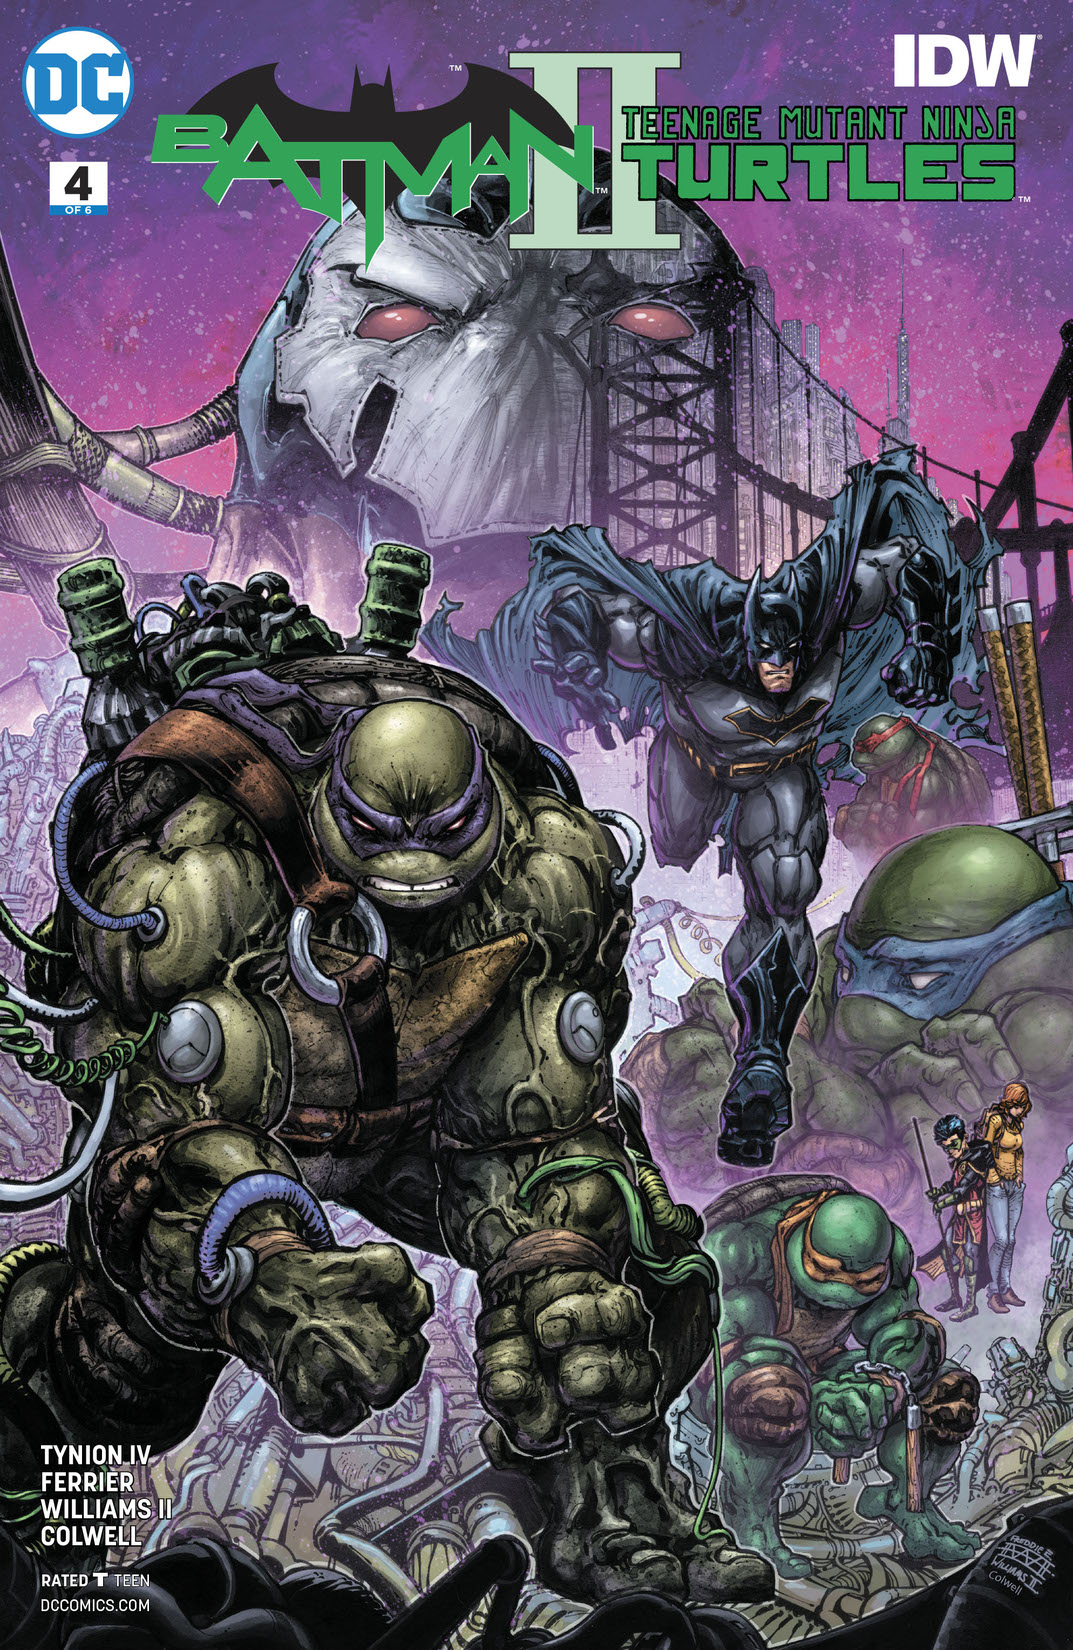 Batman/Teenage Mutant Ninja Turtles II #4 preview images